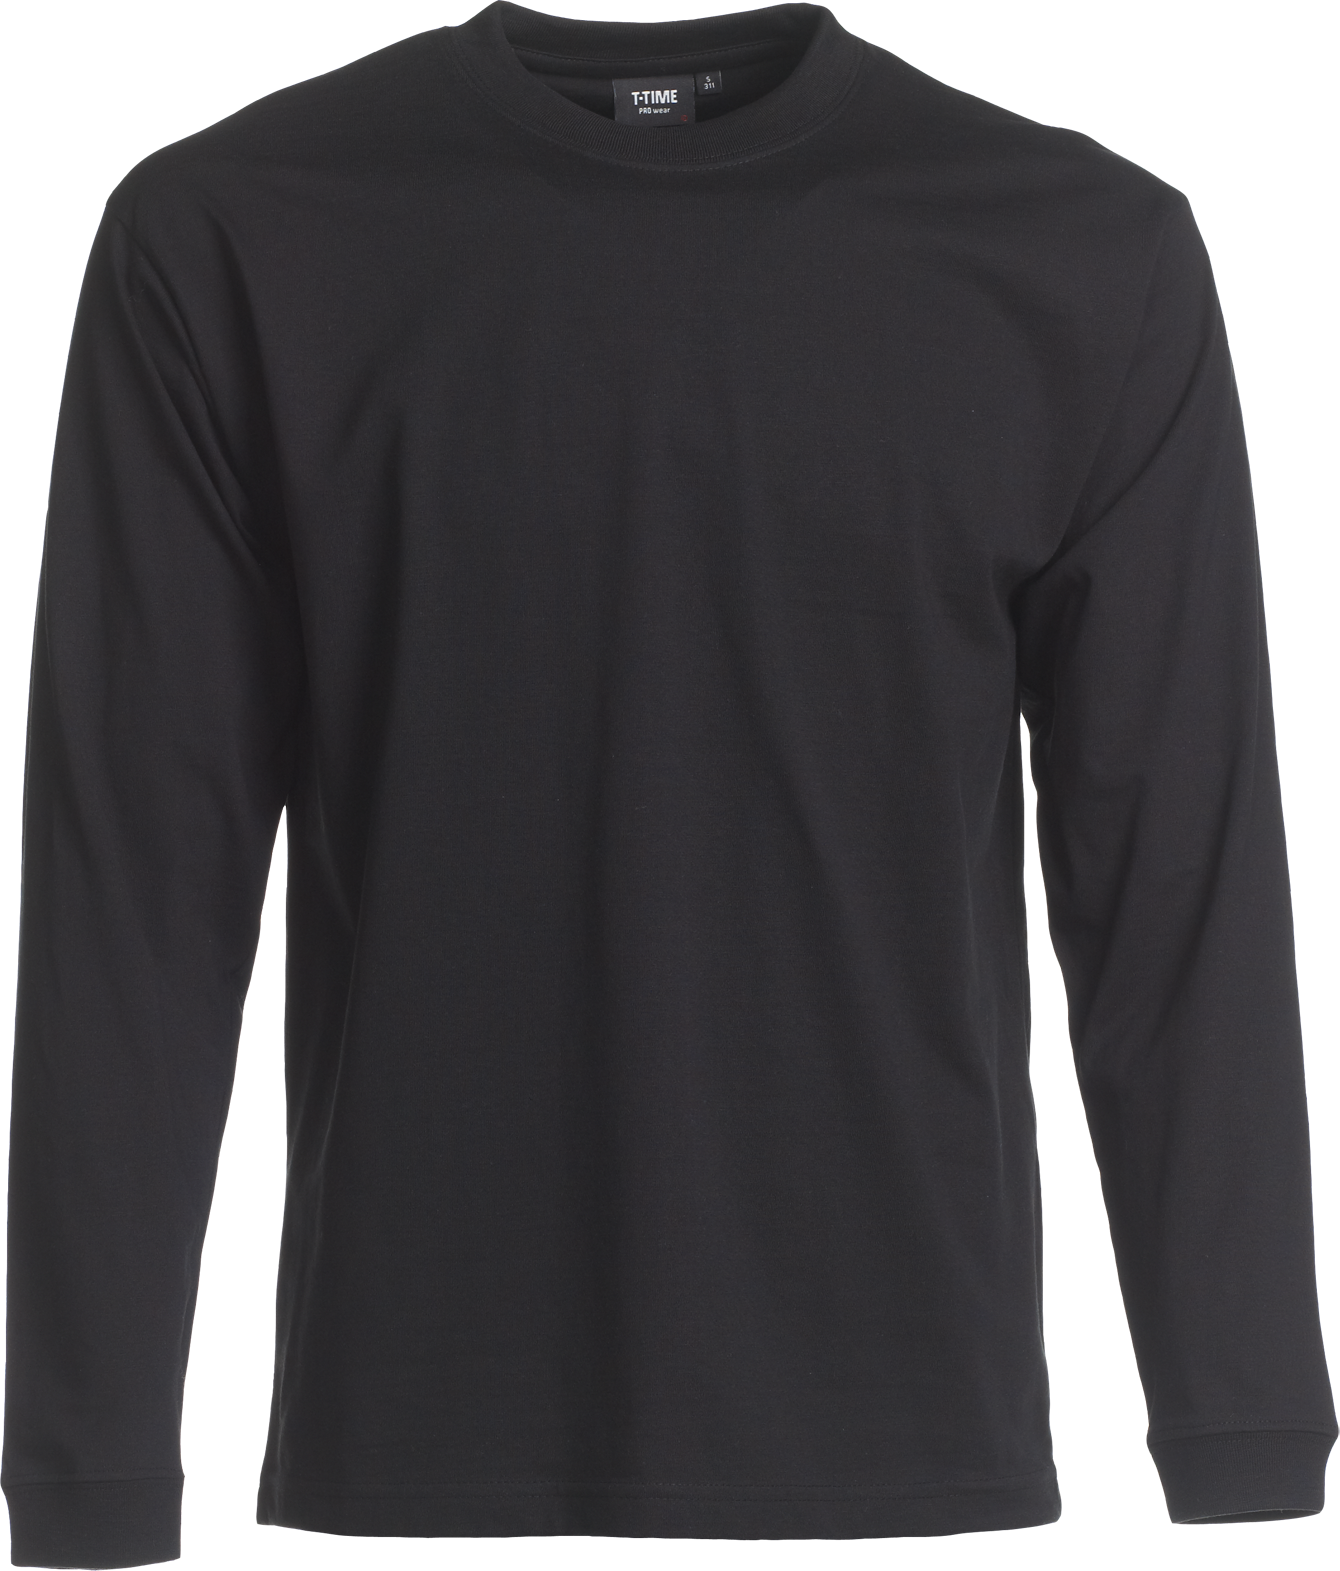 Svart Unisex T-shirt Lång ärm, Prowear, (8150221) 